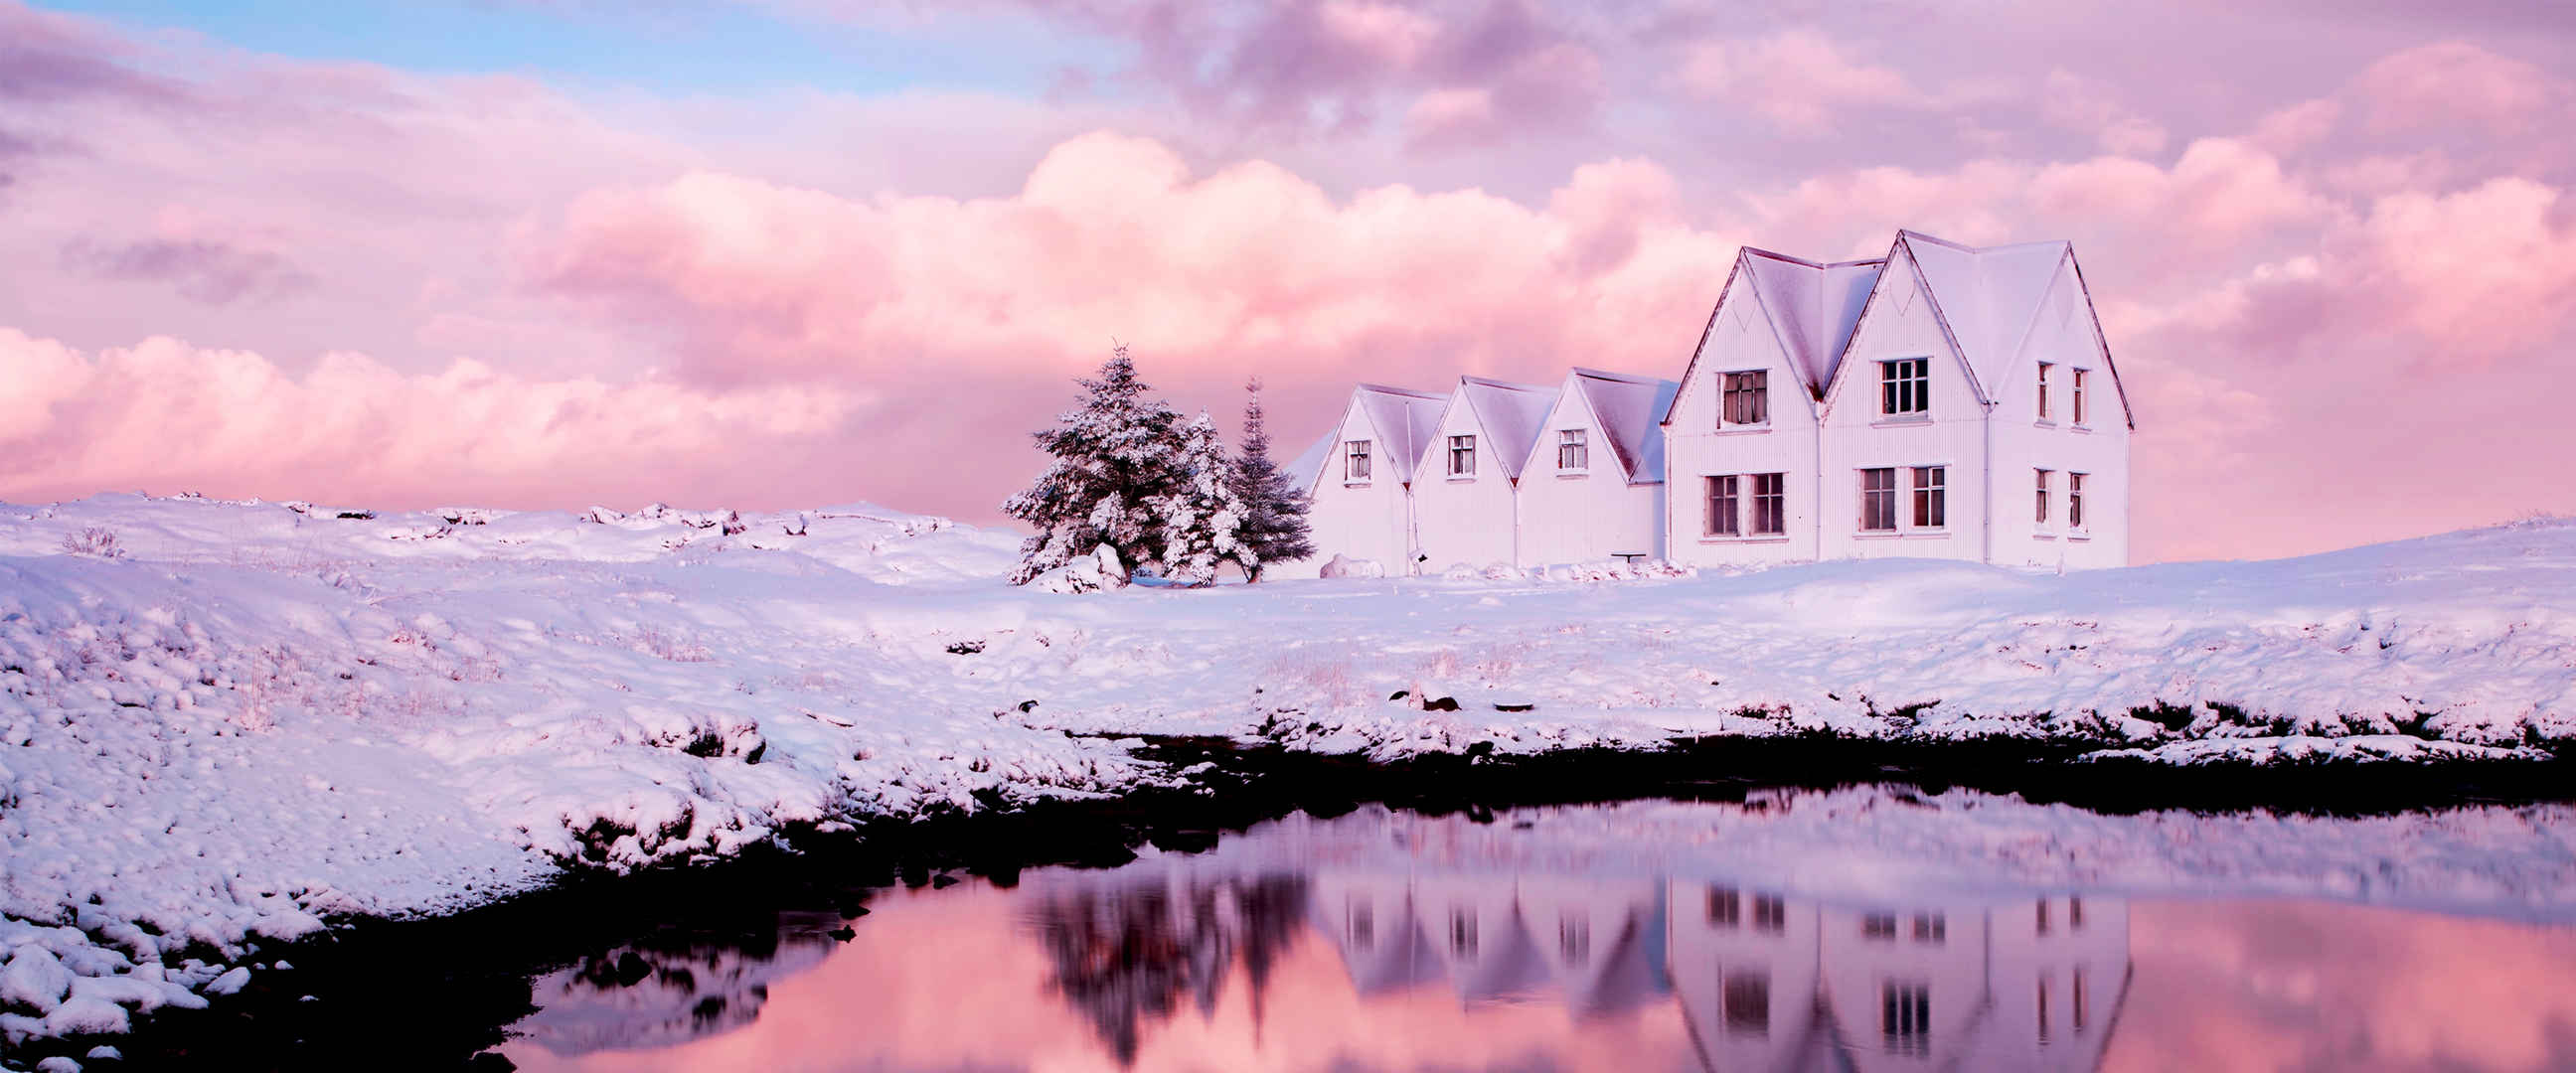 紫色天空雪景房子壁纸-